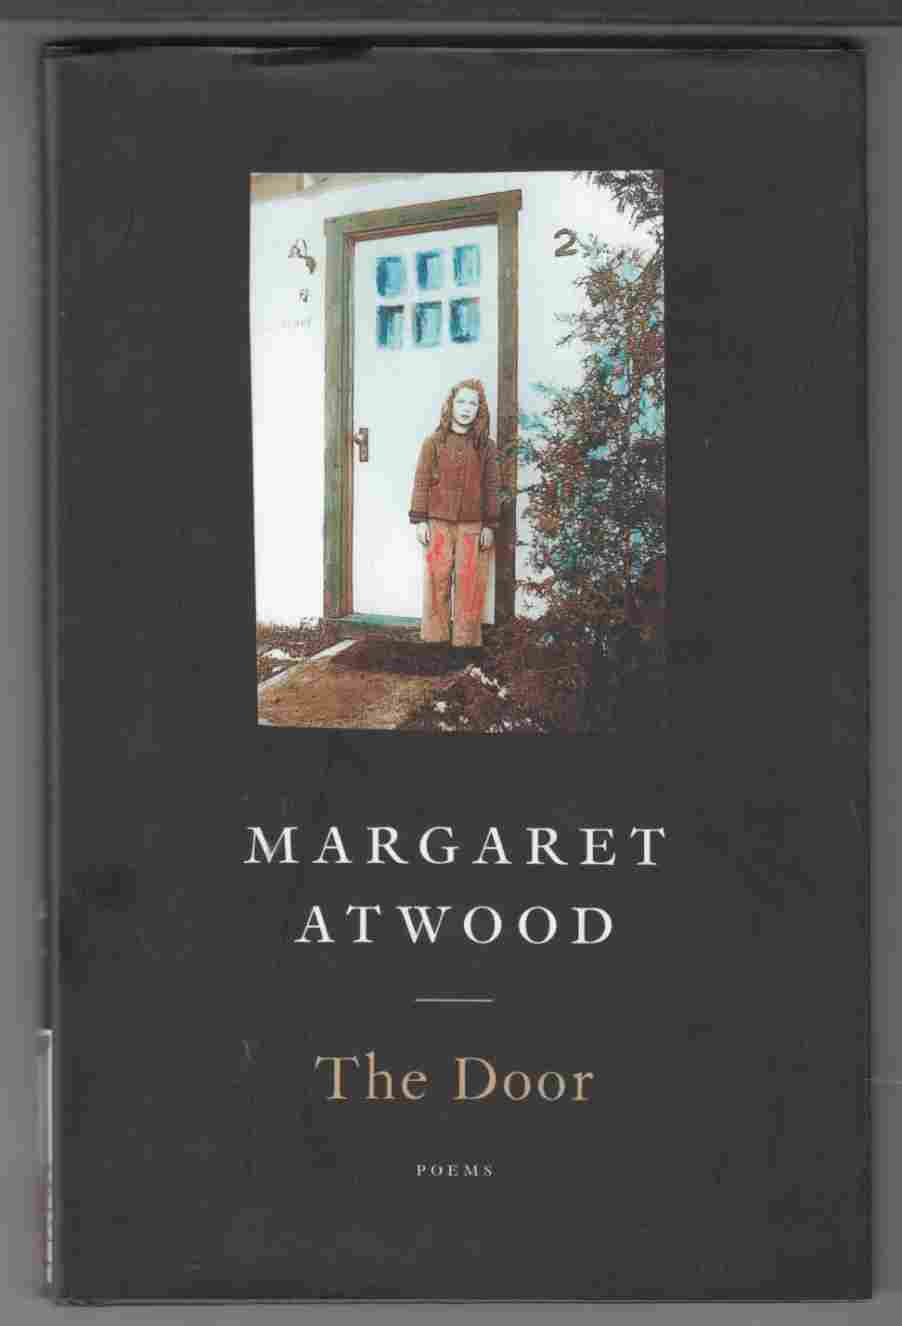 Image for The Door